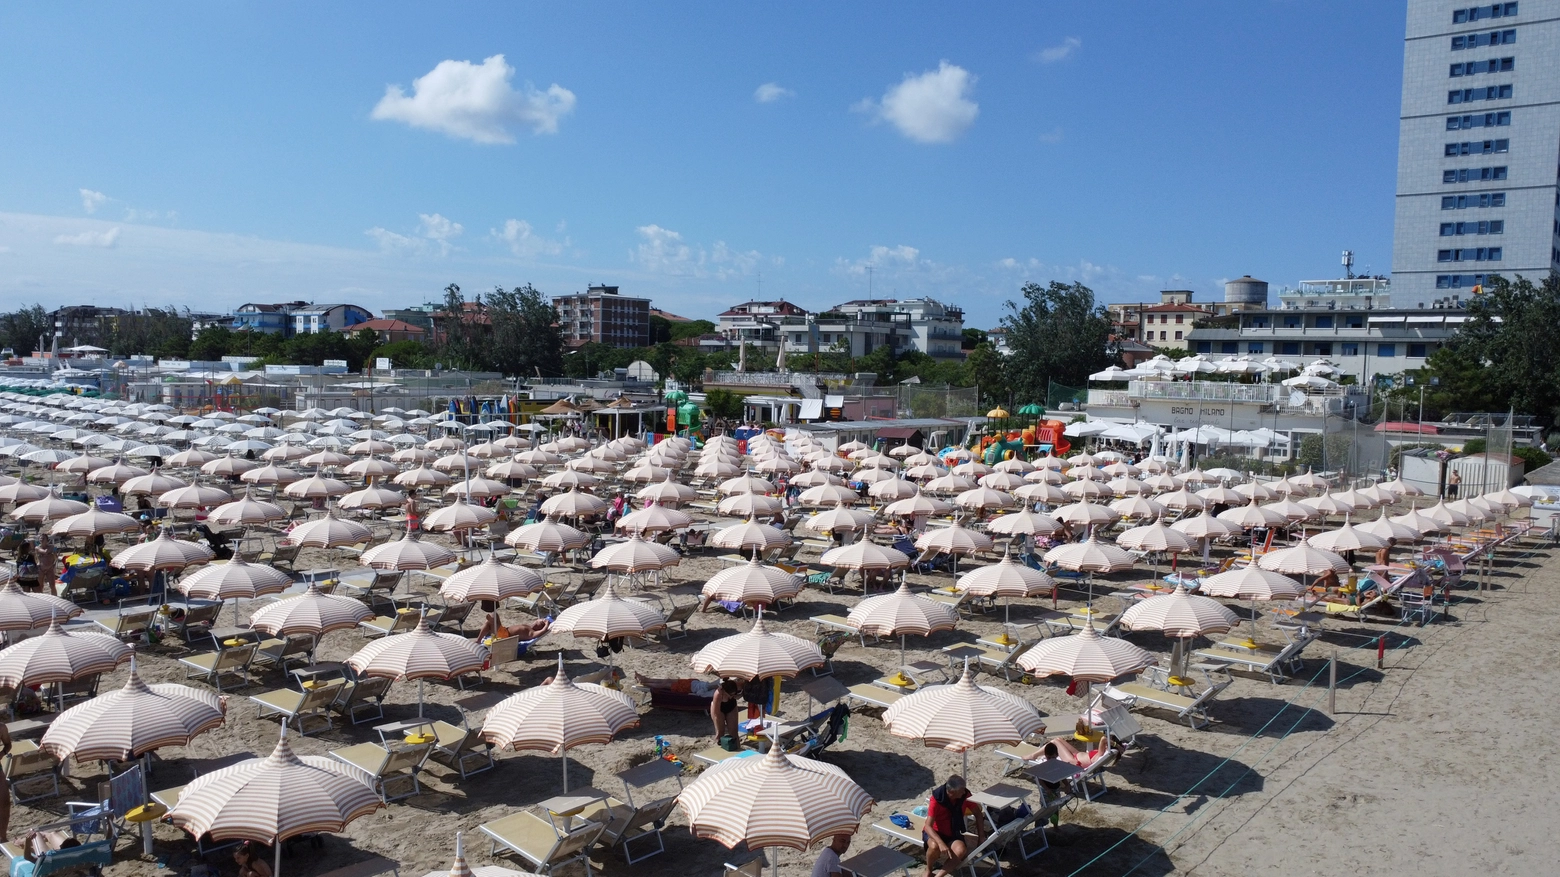 La crescita più significativa nella Riviera romagnola, che registra un incremento di turisti del +50,5%. Bonaccini e l’assessore Corsini all’unisono: “Frutto di un lavoro di squadra tra istituzioni ed enti territoriali”